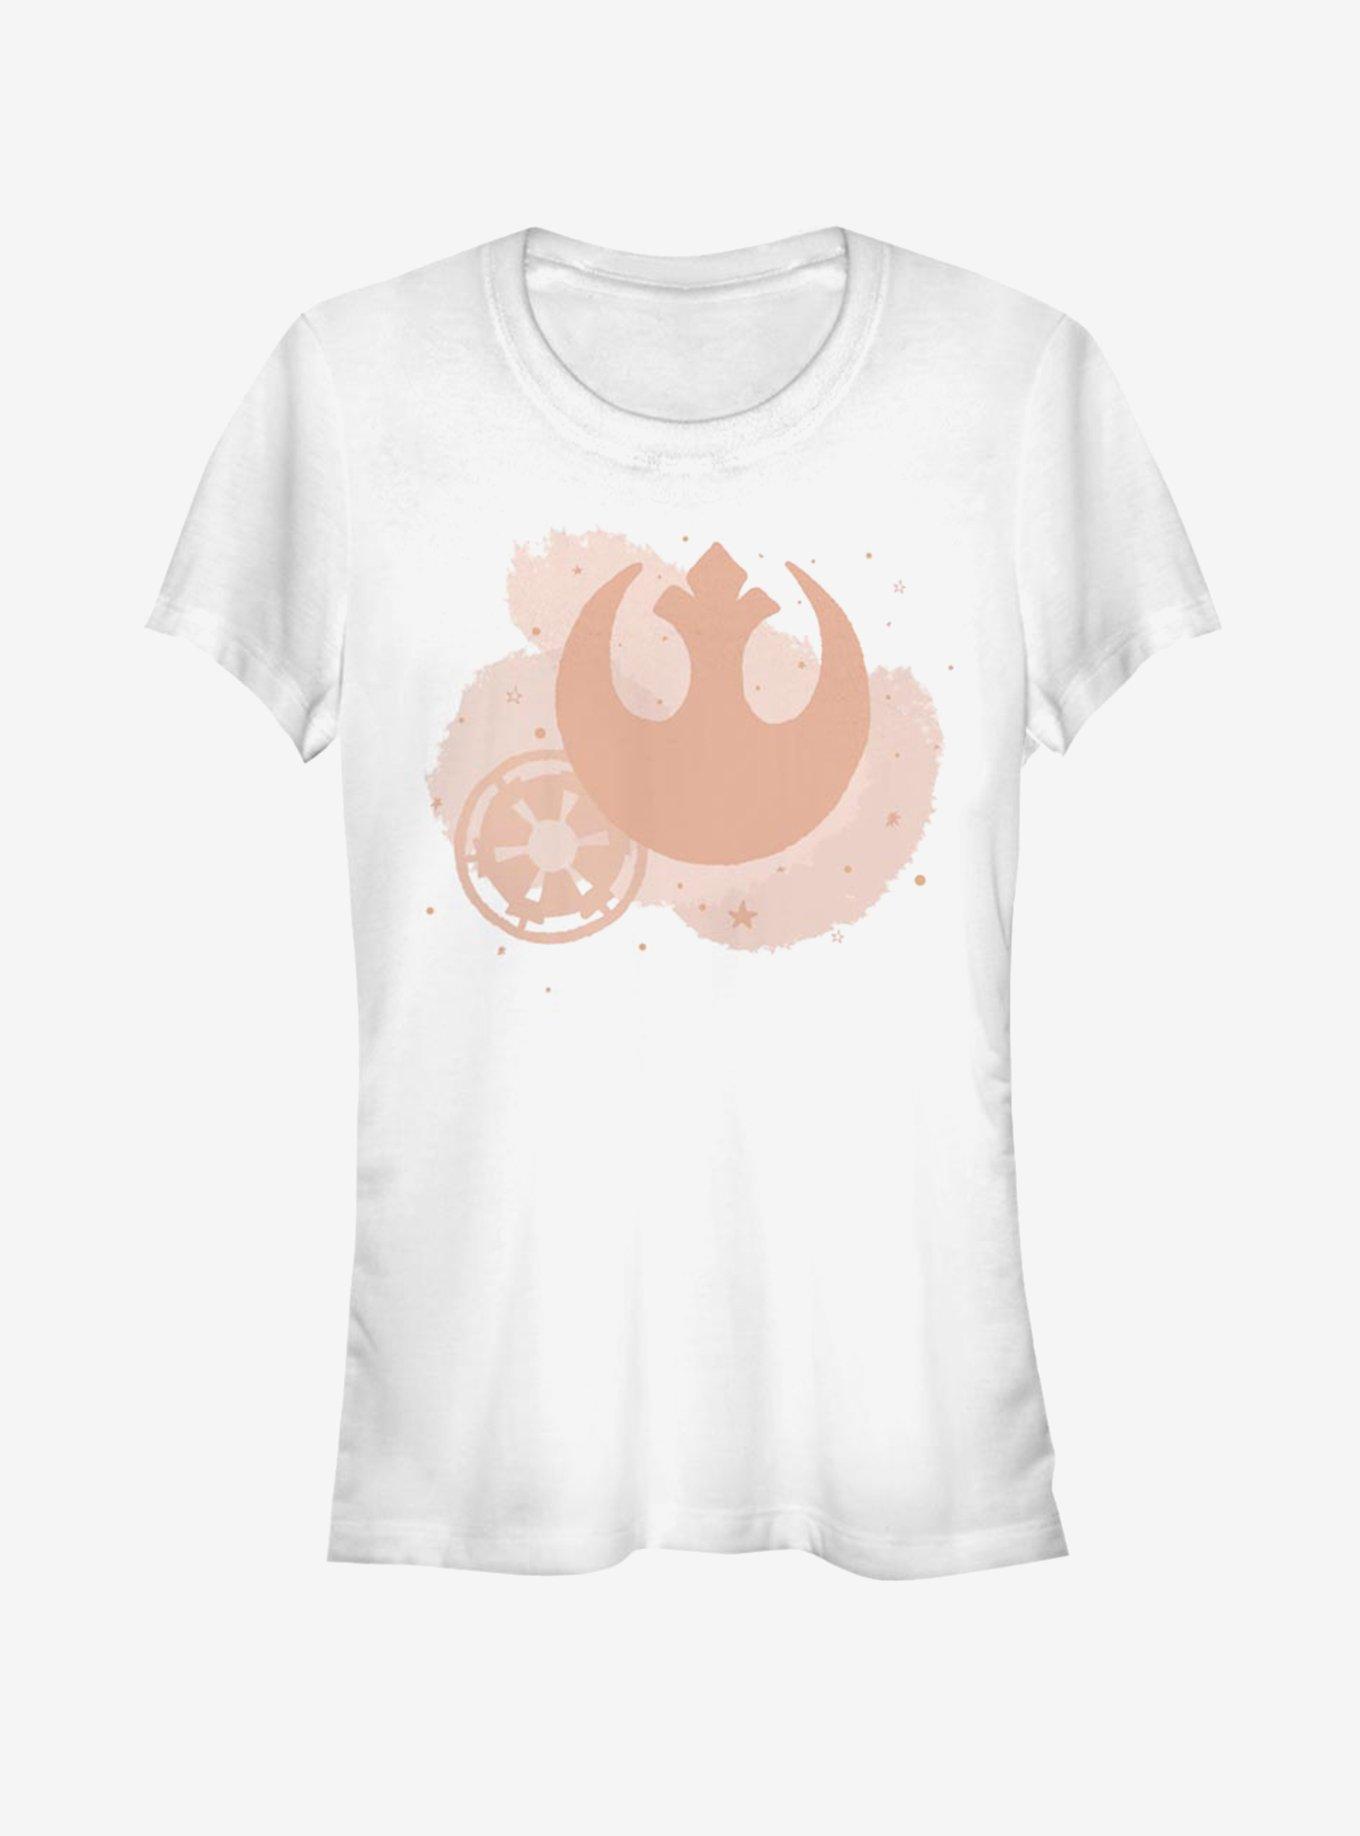 Star Wars Minimal Brush Logos Girls T-Shirt, WHITE, hi-res